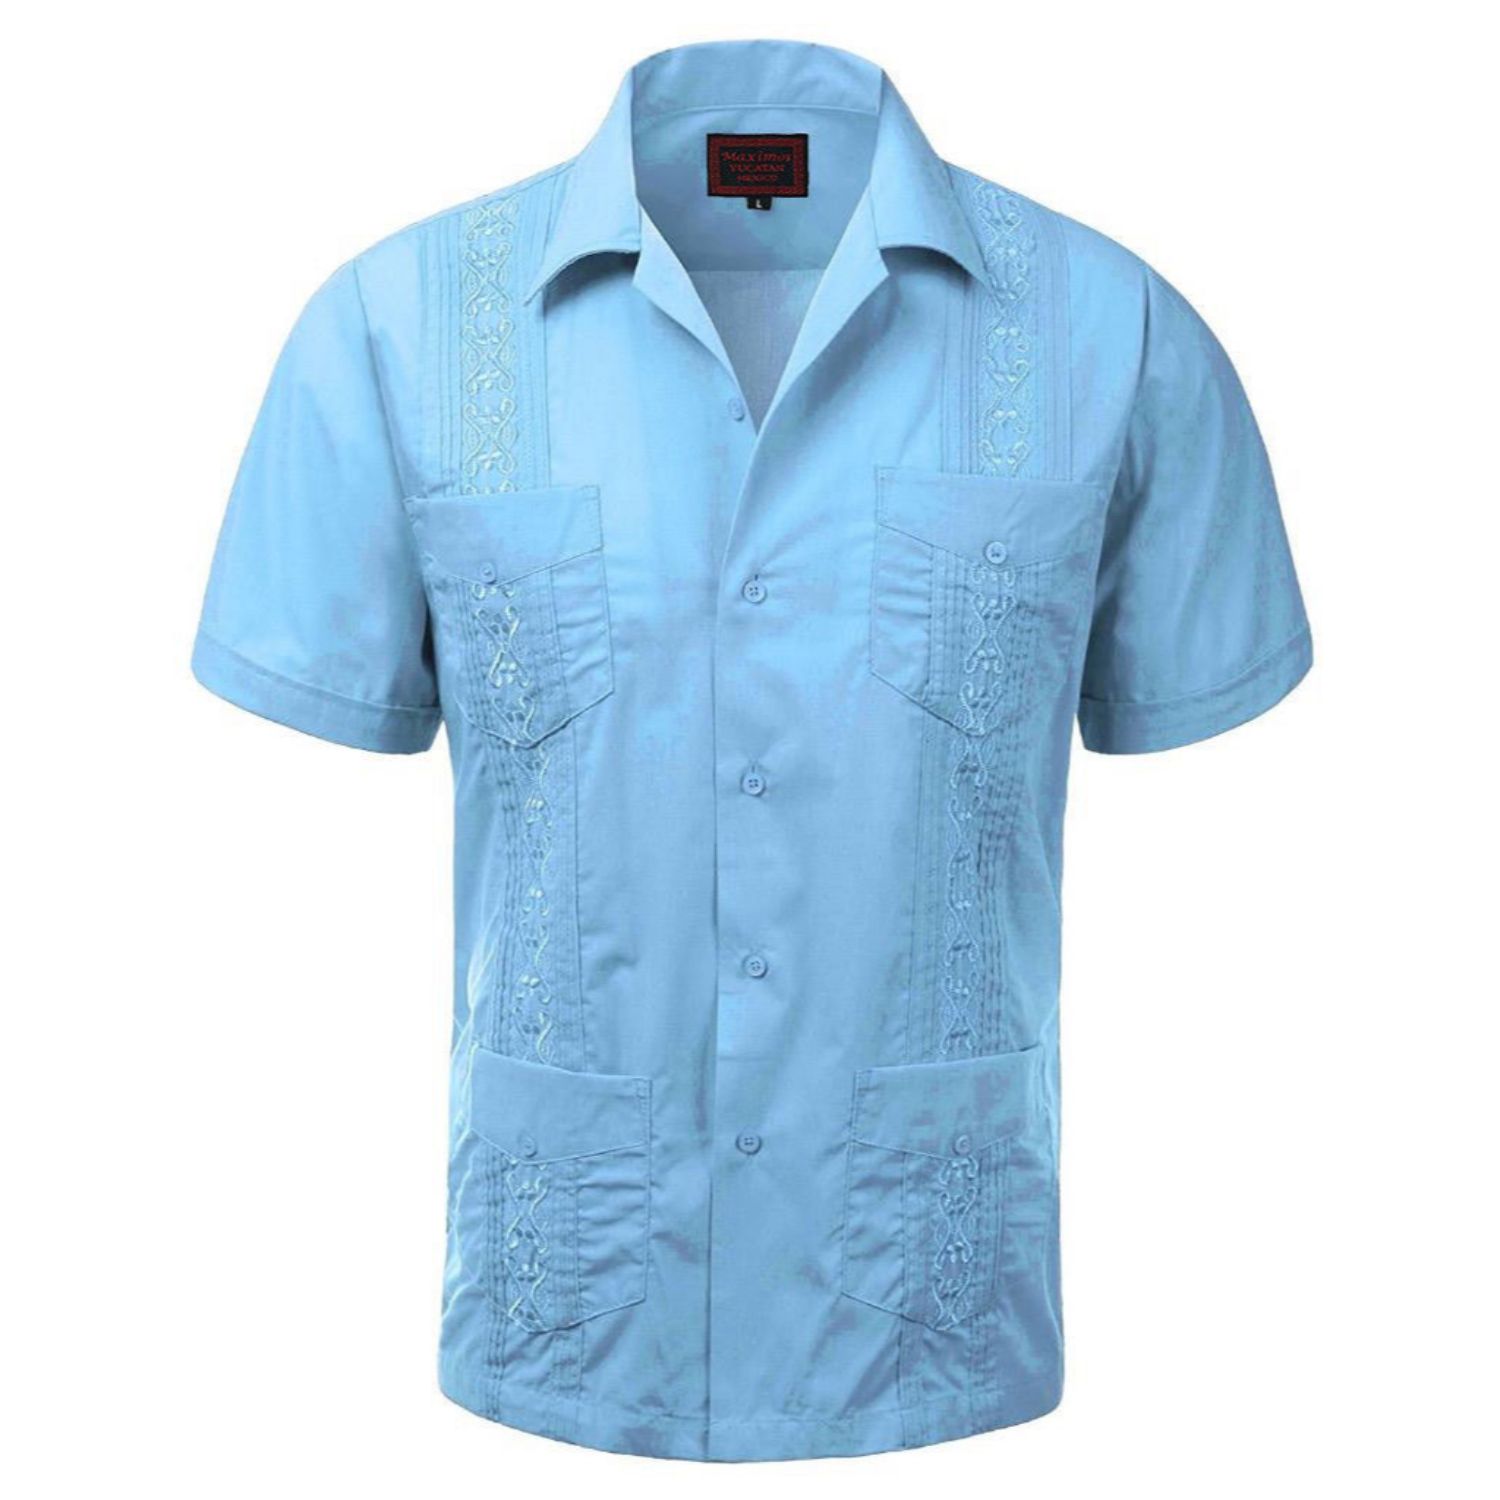 Maximos Men's Guayabera Summer Casual Cuban Beach Wedding Vacation Short Sleeve Button-up Casual Dress Shirt Light Blue 2XL - image 1 of 1